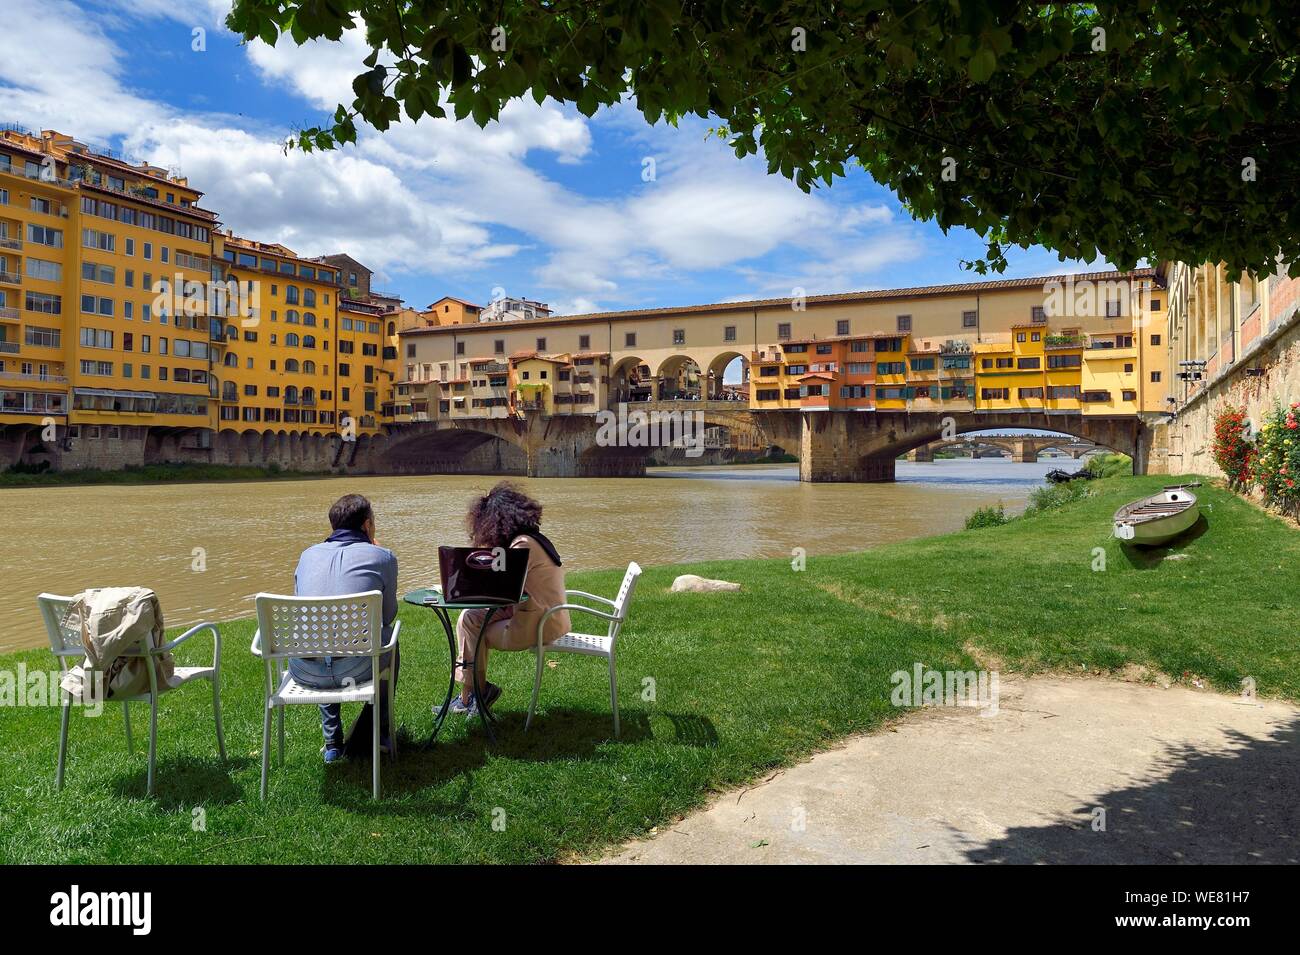 Italie, Toscane, Florence, classé au Patrimoine Mondial de l'UNESCO, le Ponte Vecchio vu de la Societa Canottieri Firenze (Florence Rowing Club), les membres du club ayant un reste sur le bord de la rivière Arno Banque D'Images